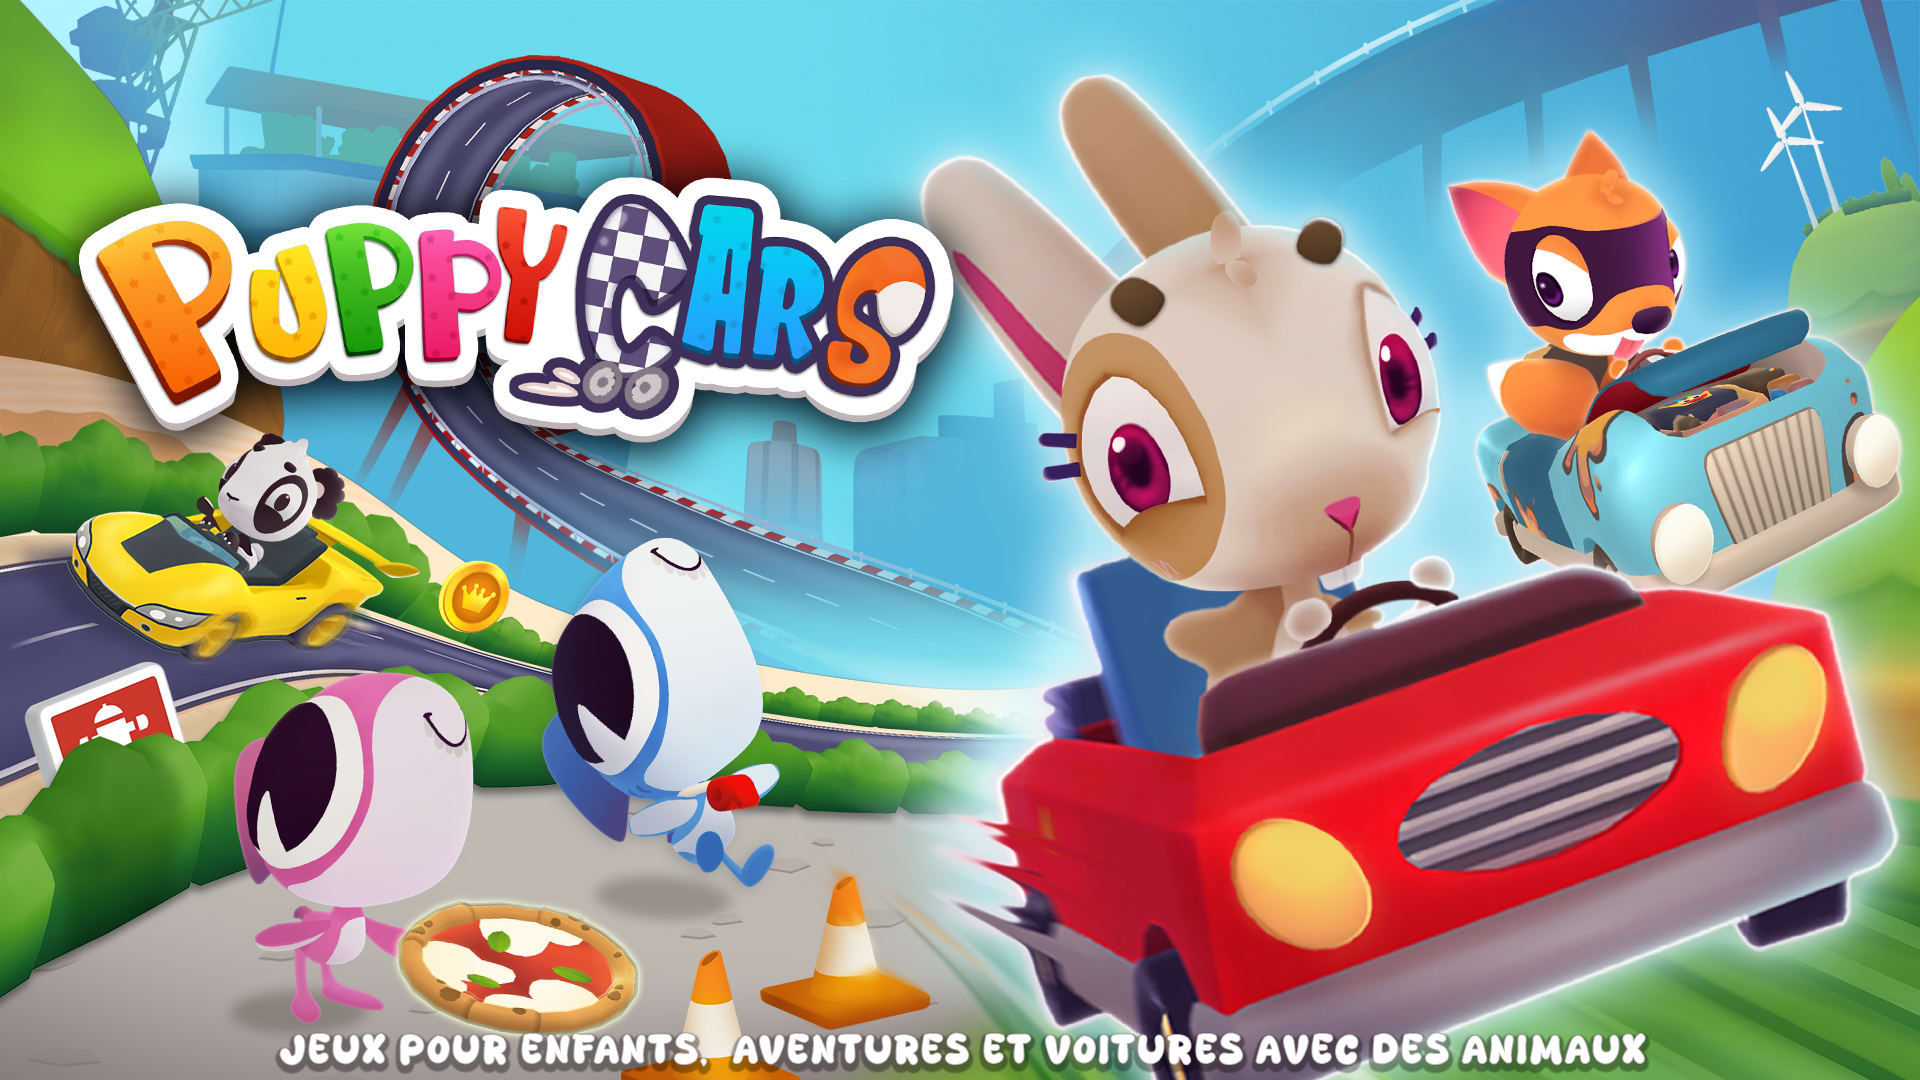 Puppy Cars: Jeux pour enfants, Aventures et voitures avec des animaux